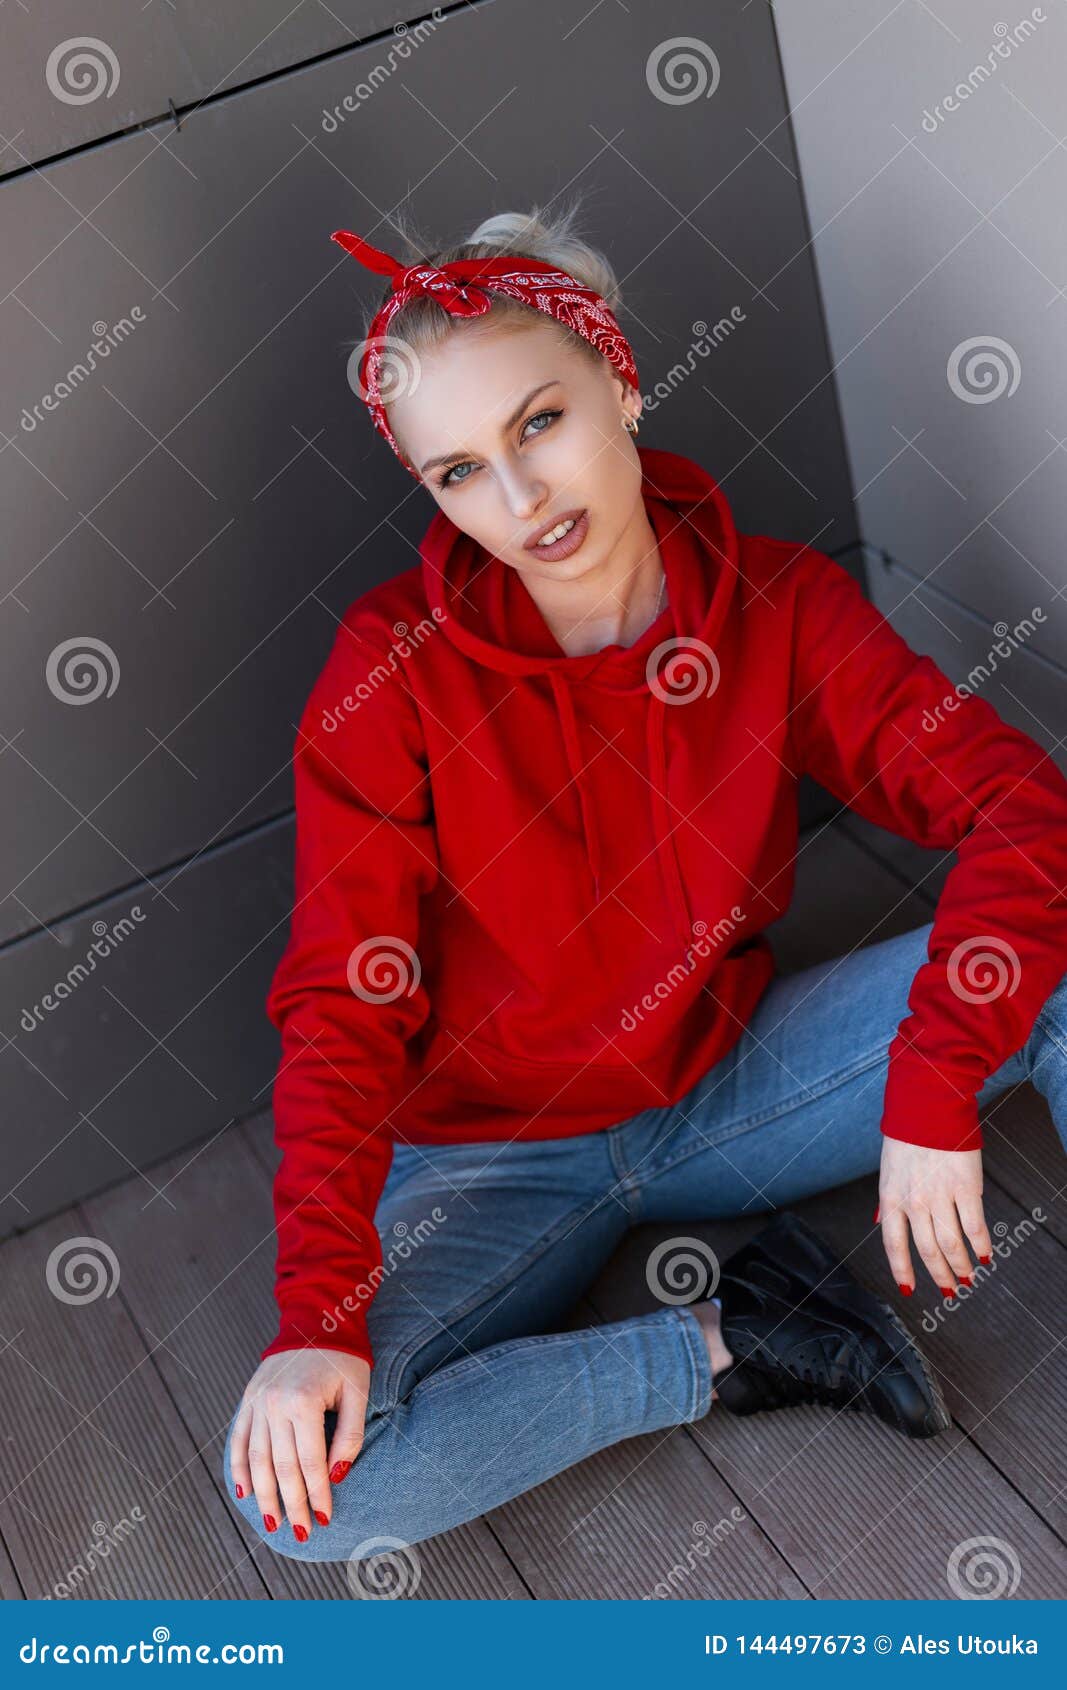 Mujer Rubia Joven Moderna Americana En Una Sudadera Con Capucha Roja De Moda En Pañuelo En Las Botas De Cuero En Tejanos Imagen de archivo - Imagen de fashionable, modelo: 144497673